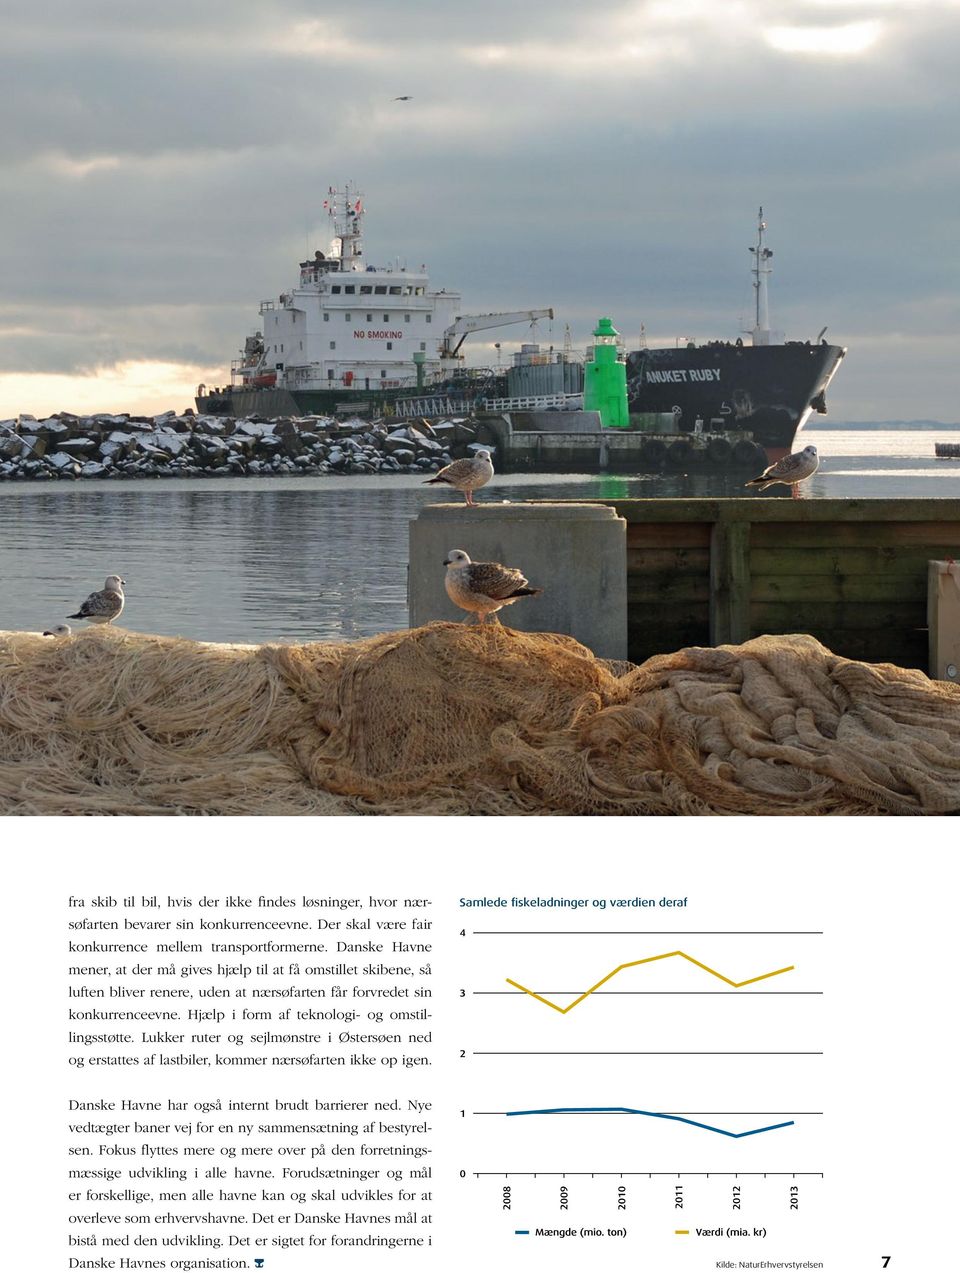 Lukker ruter og sejlmønstre i Østersøen ned og erstattes af lastbiler, kommer nærsøfarten ikke op igen. Samlede fiskeladninger og værdien deraf Danske Havne har også internt brudt barrierer ned.